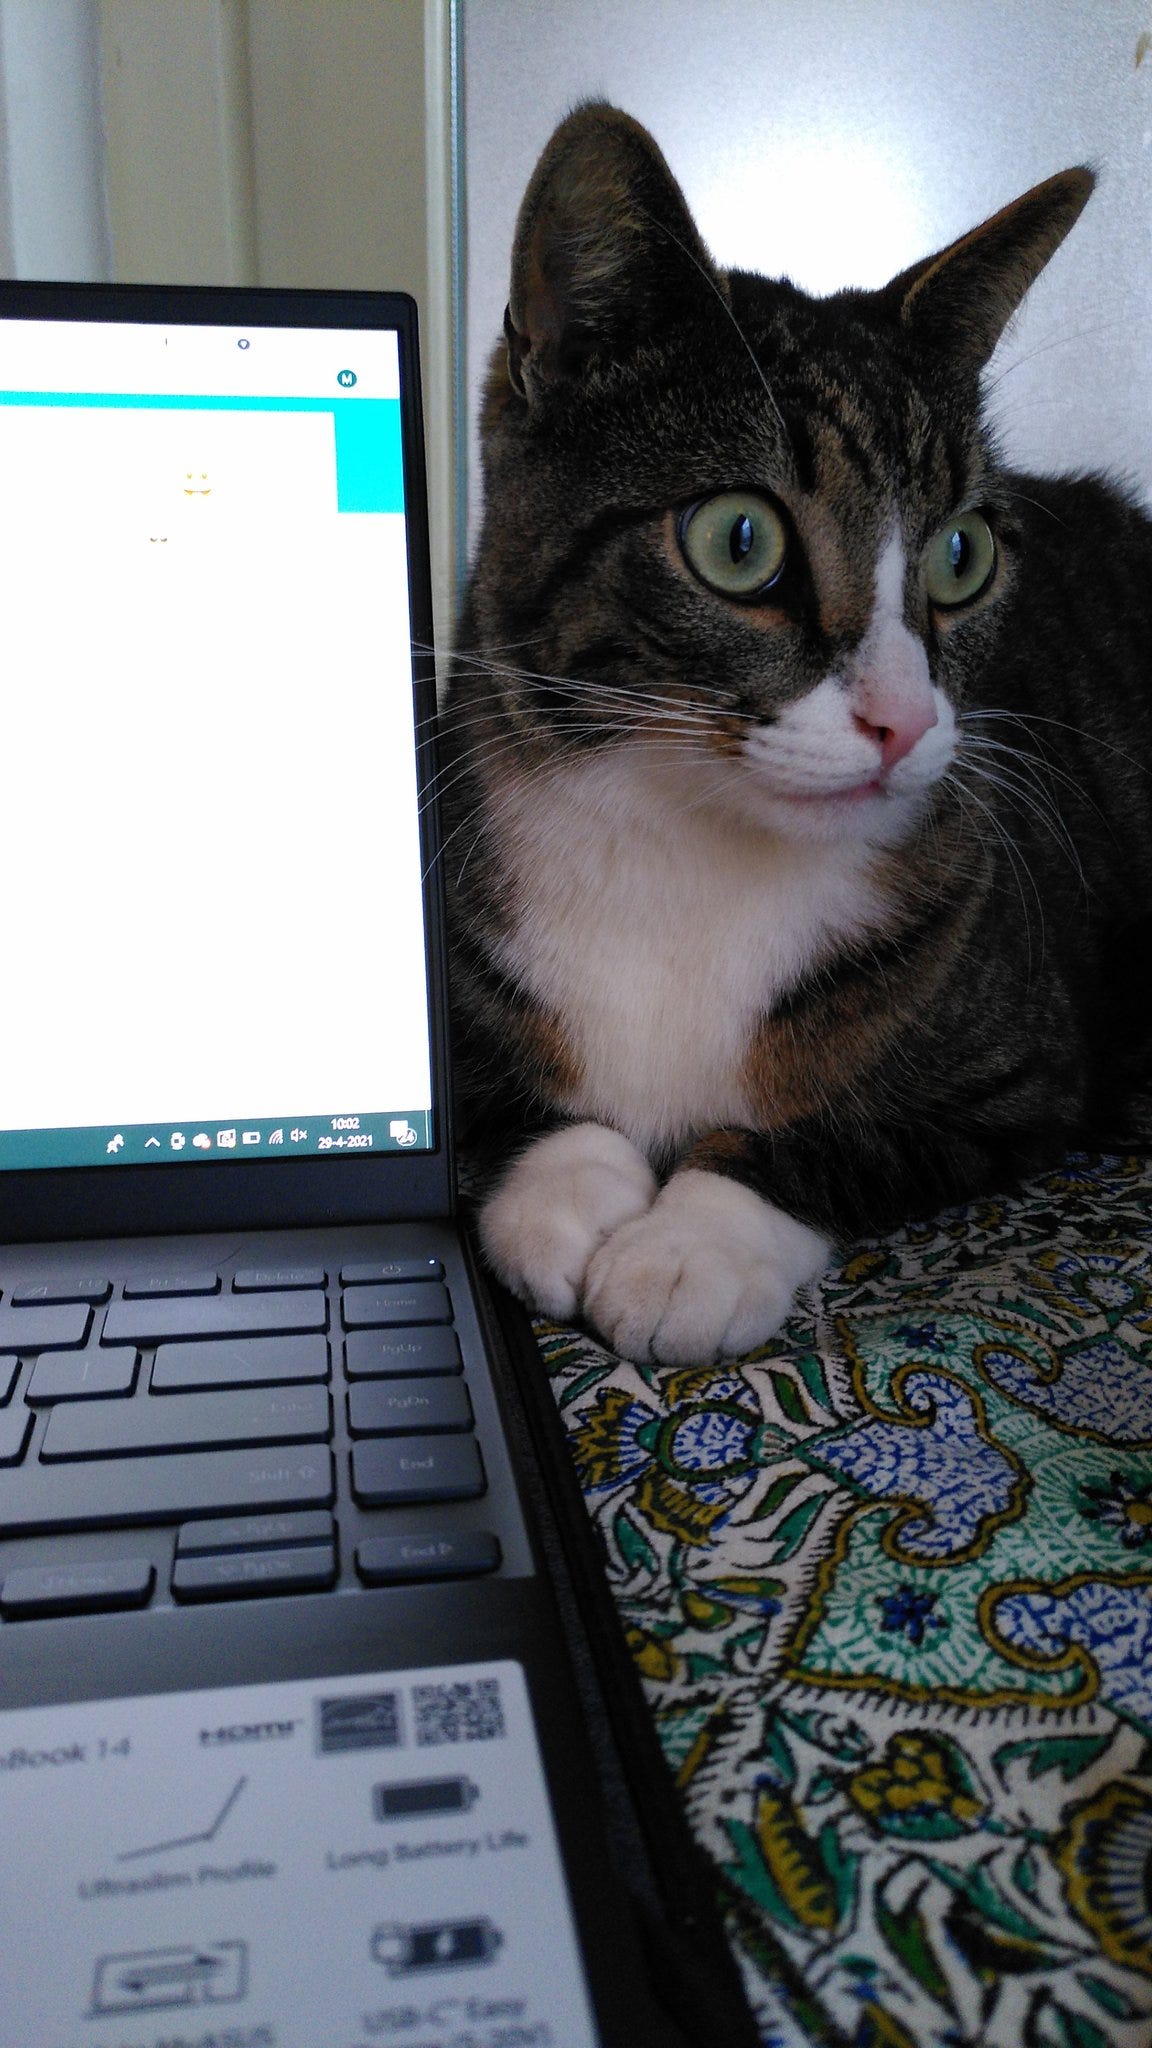 foto van een laptop op een tafel waar een tabby kat met hele grote ogen naast zit. De kat heeft ook een wit befje